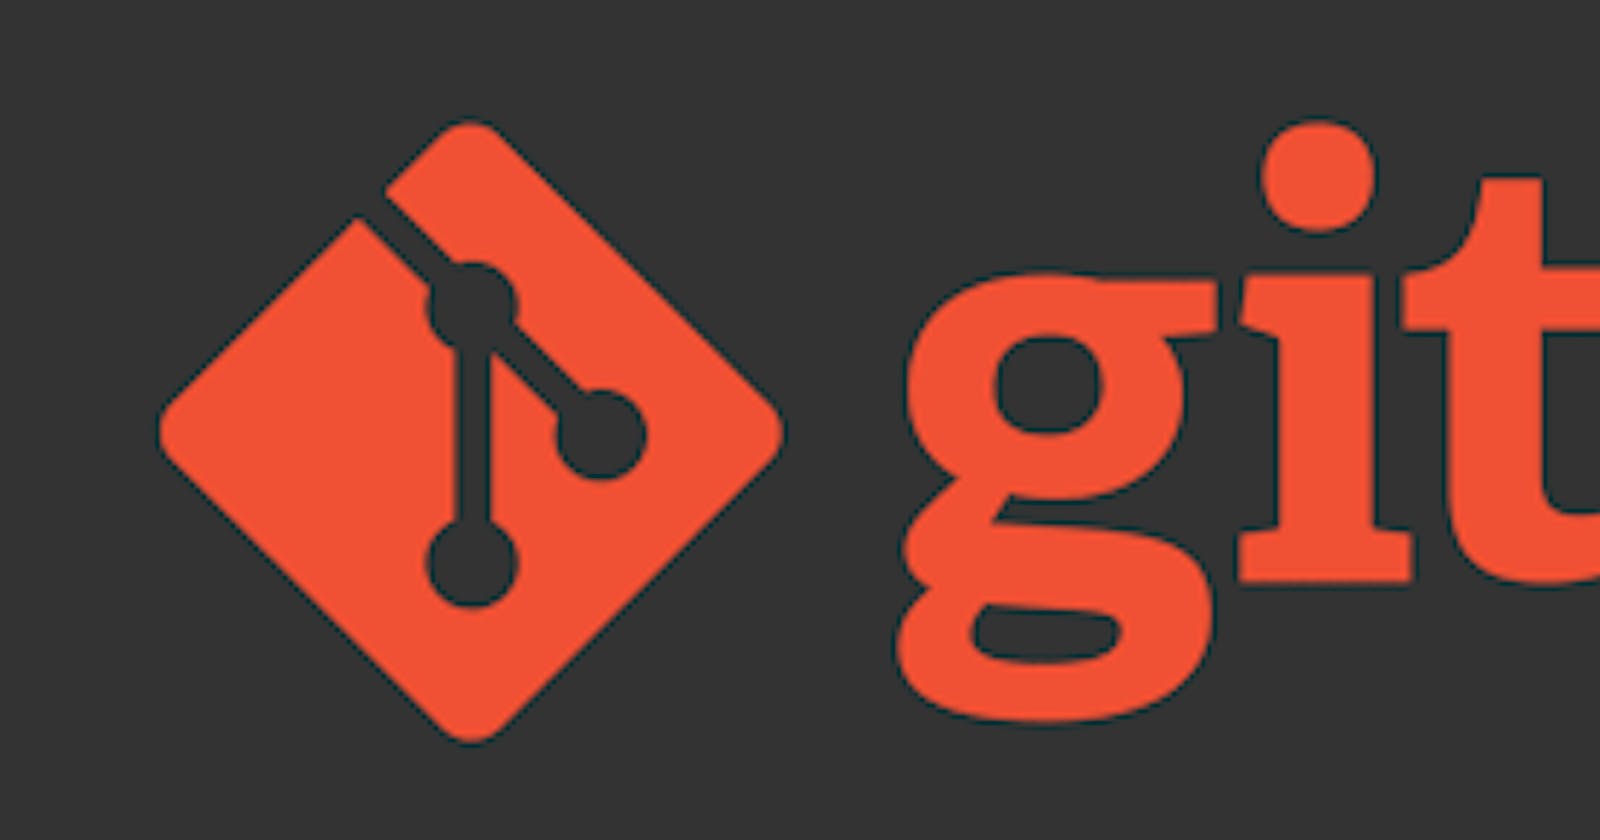 Learn Git in 10 minutes.